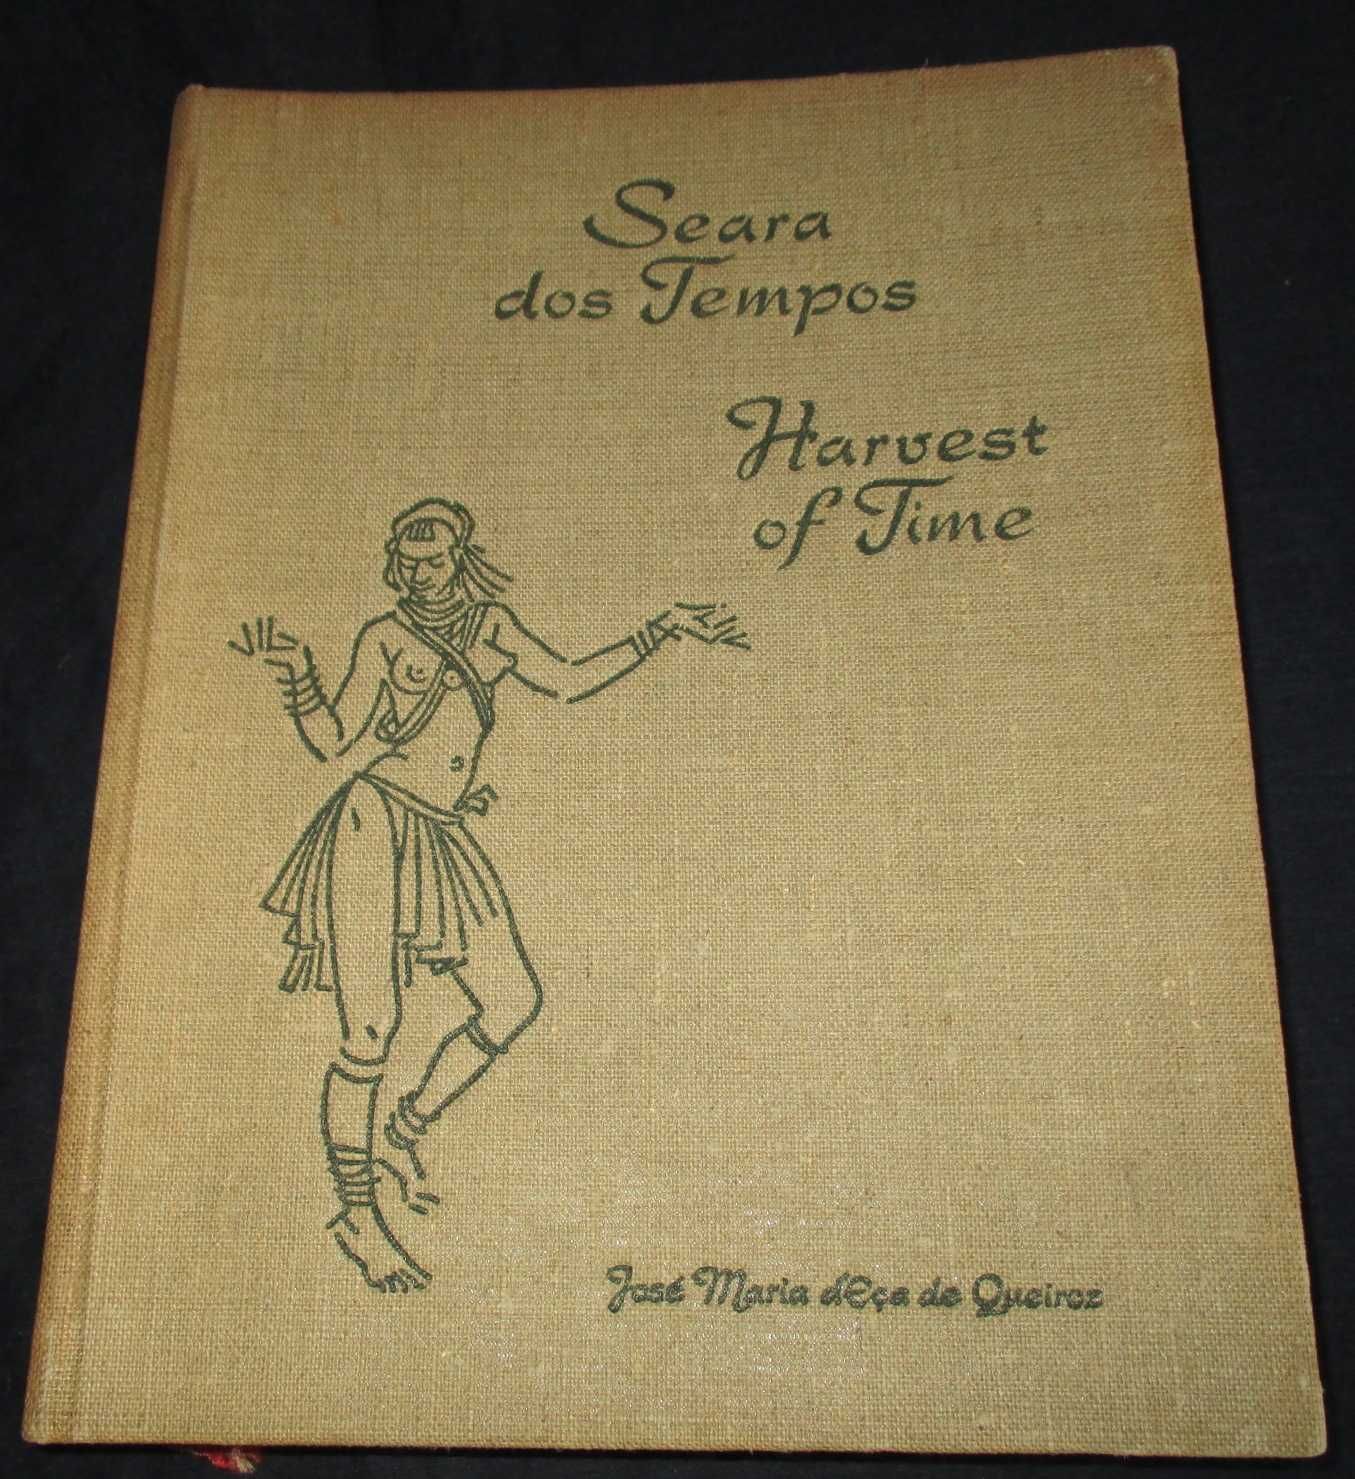 Livro Seara dos Tempos Harvest of time Eça de Queiroz 1969